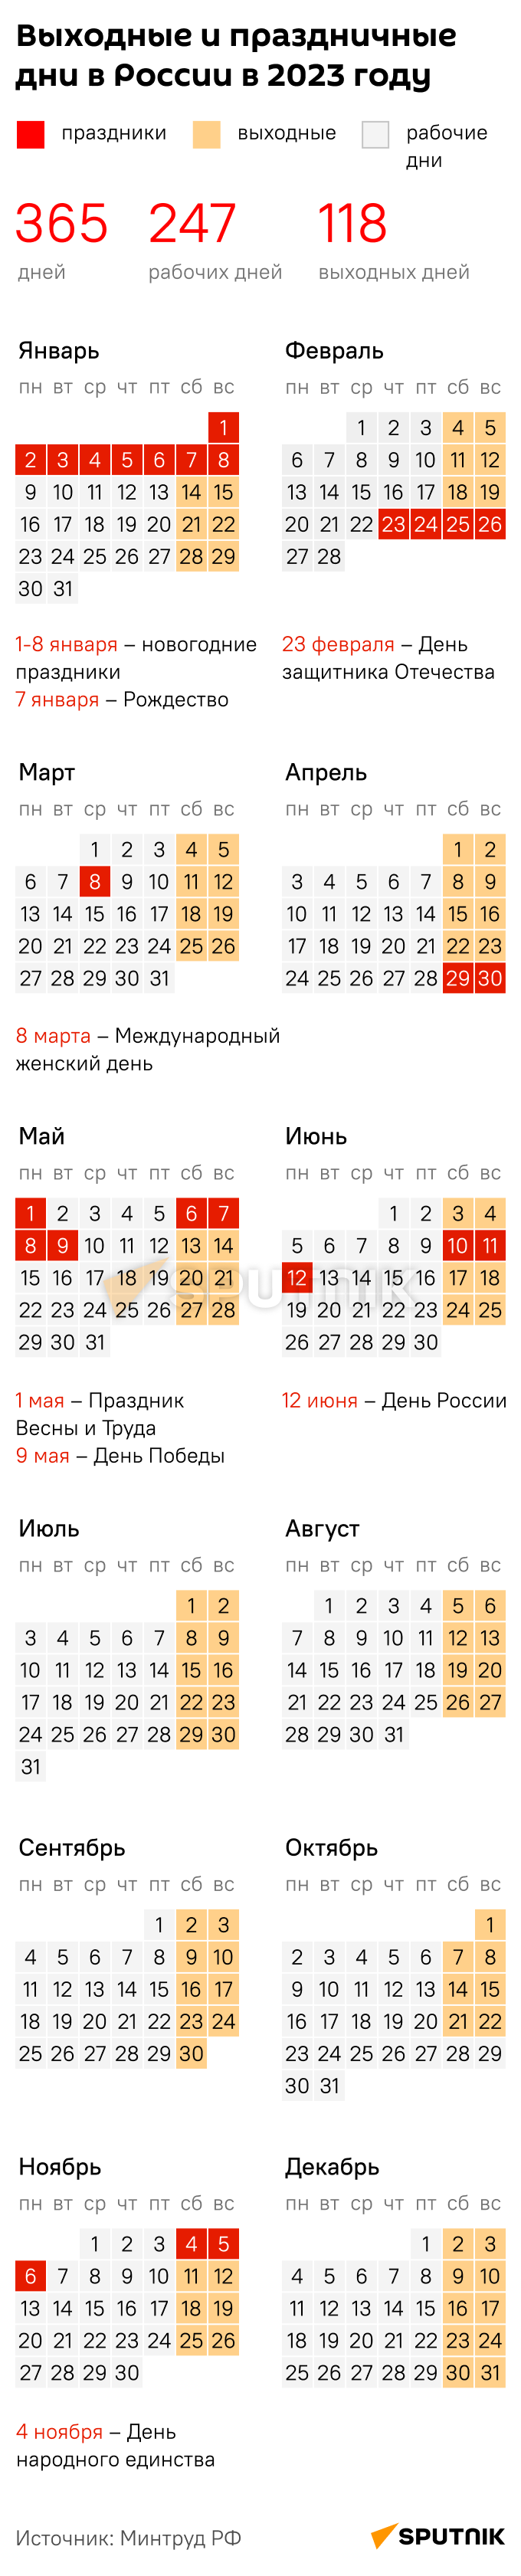 Трудовой календарь 2023 - Sputnik Таджикистан